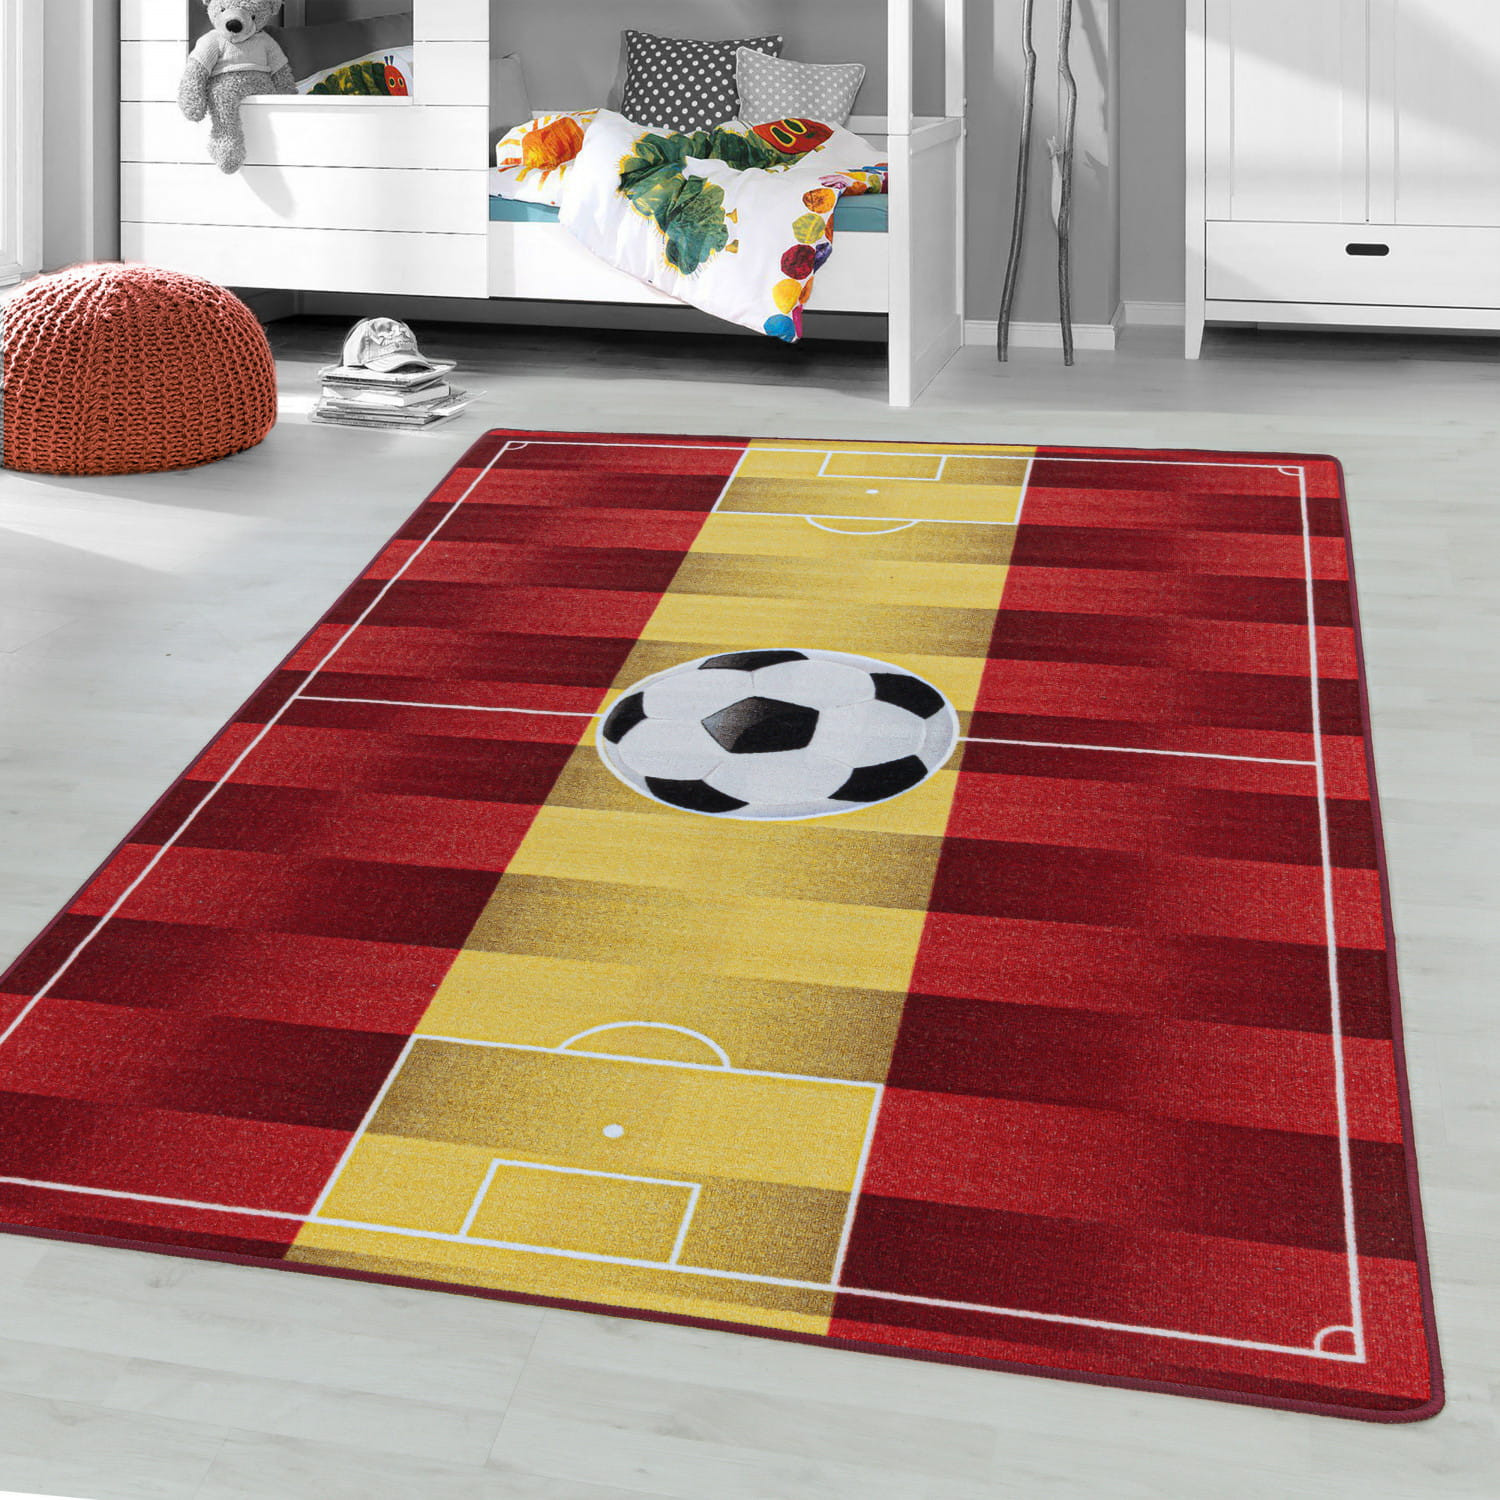 Detský protišmykový koberec Play ihrisko červeno žltý